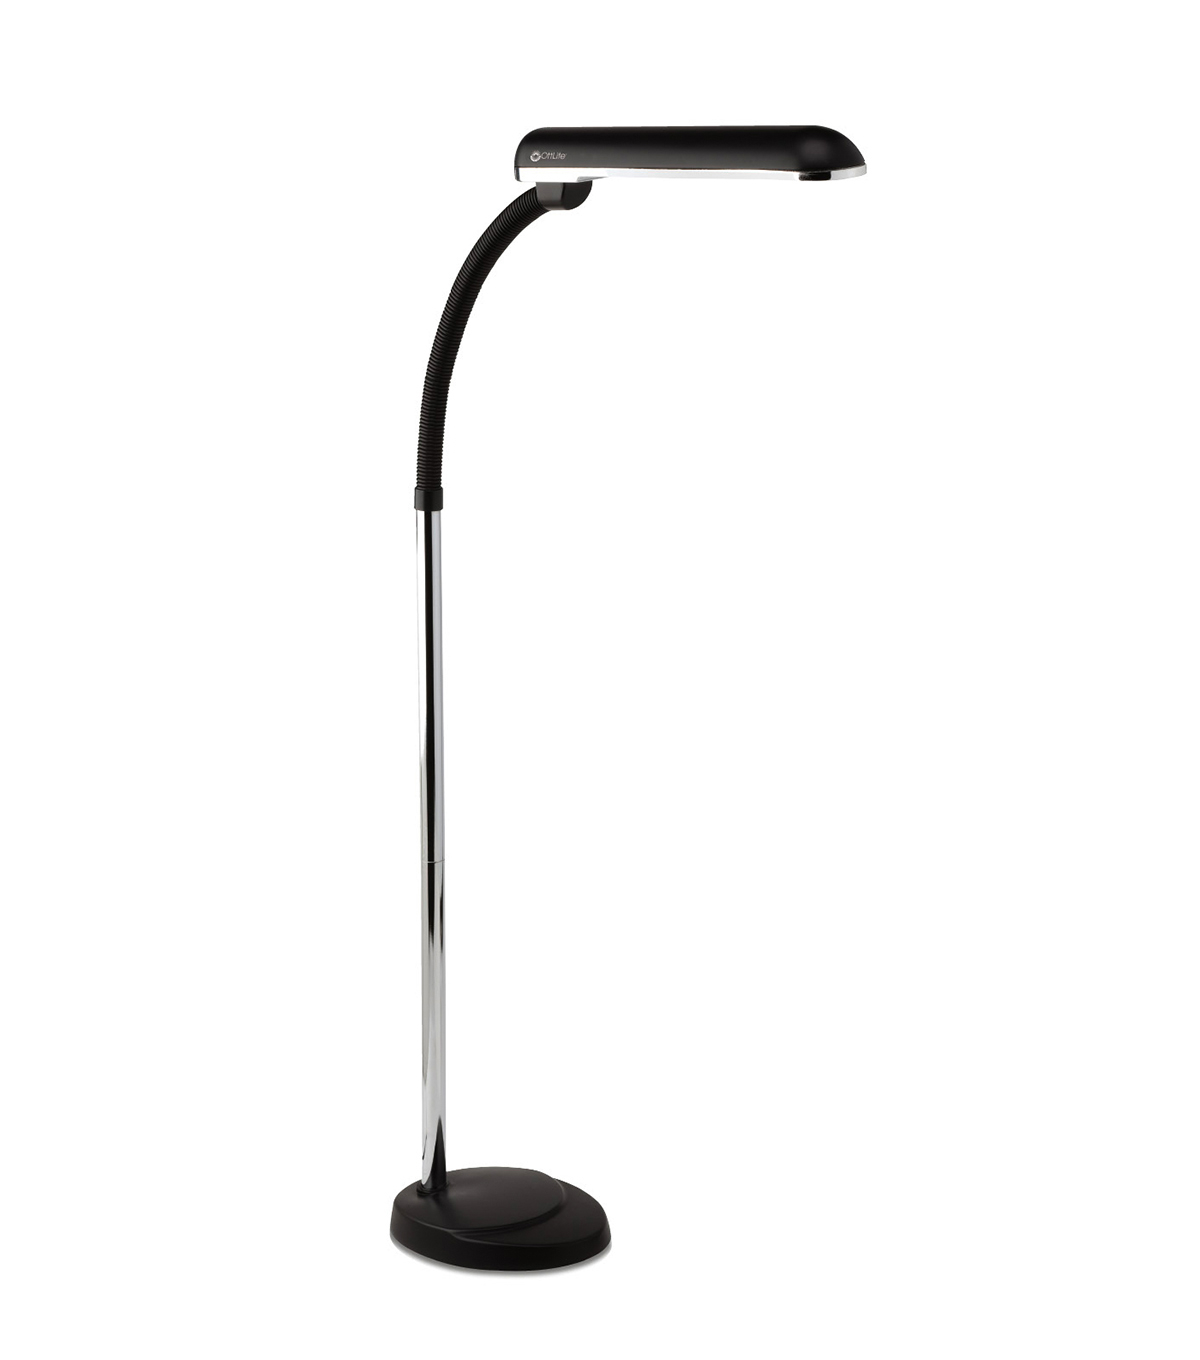 Ottlite 24w High Design Pro Floor Lamp intended for size 1200 X 1360